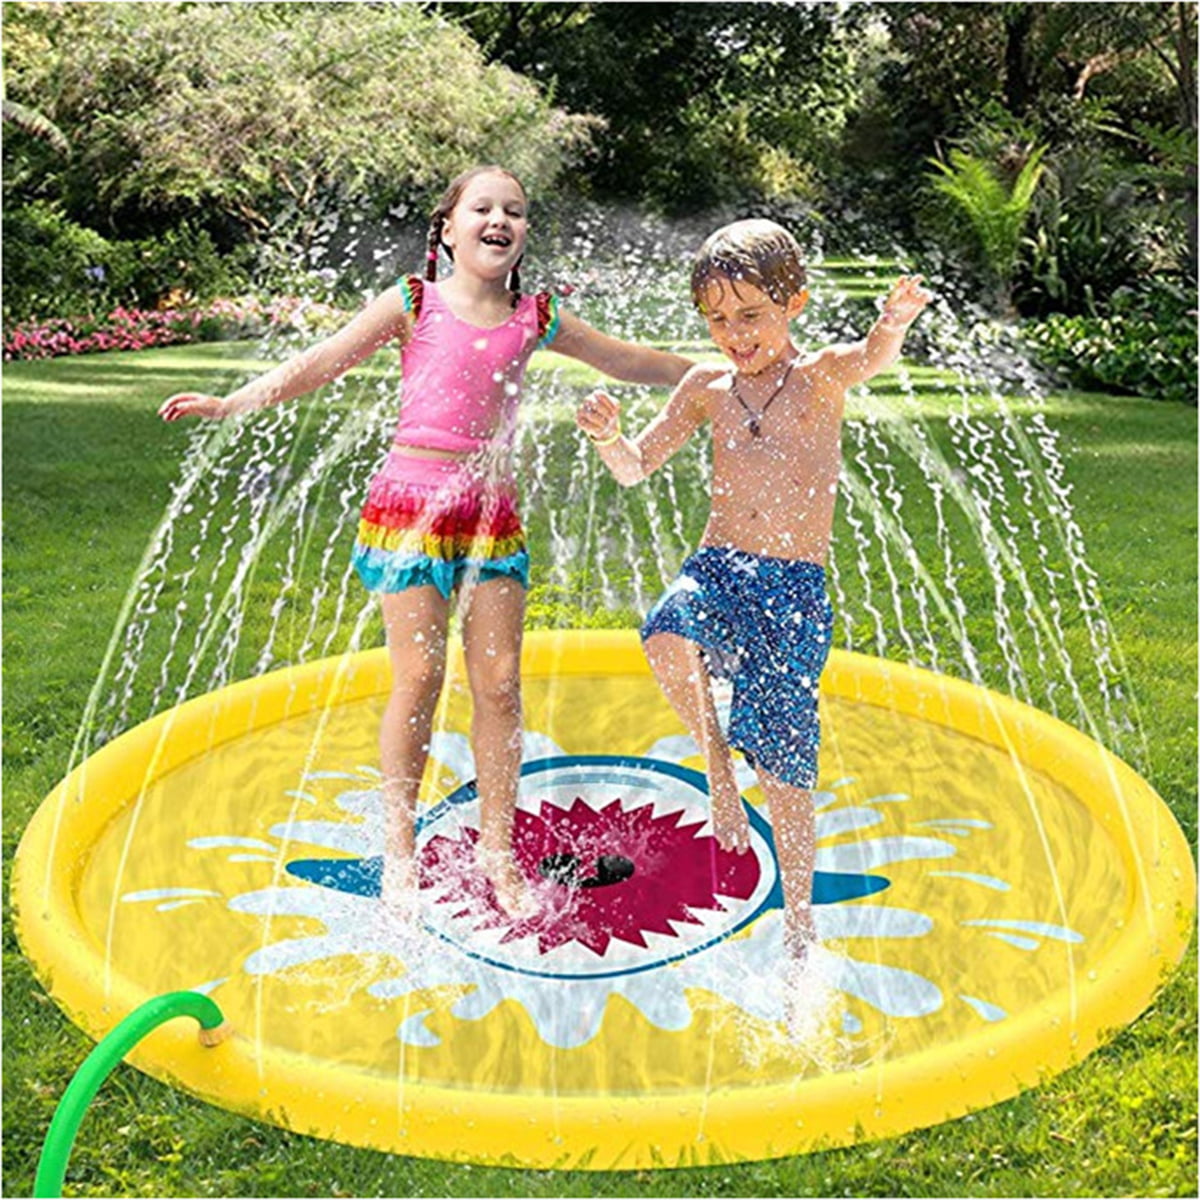 44" Inflatable Sprinkle Splash Pool Mat Pad Water Spray Play Kid Toy Fun Outdoor 